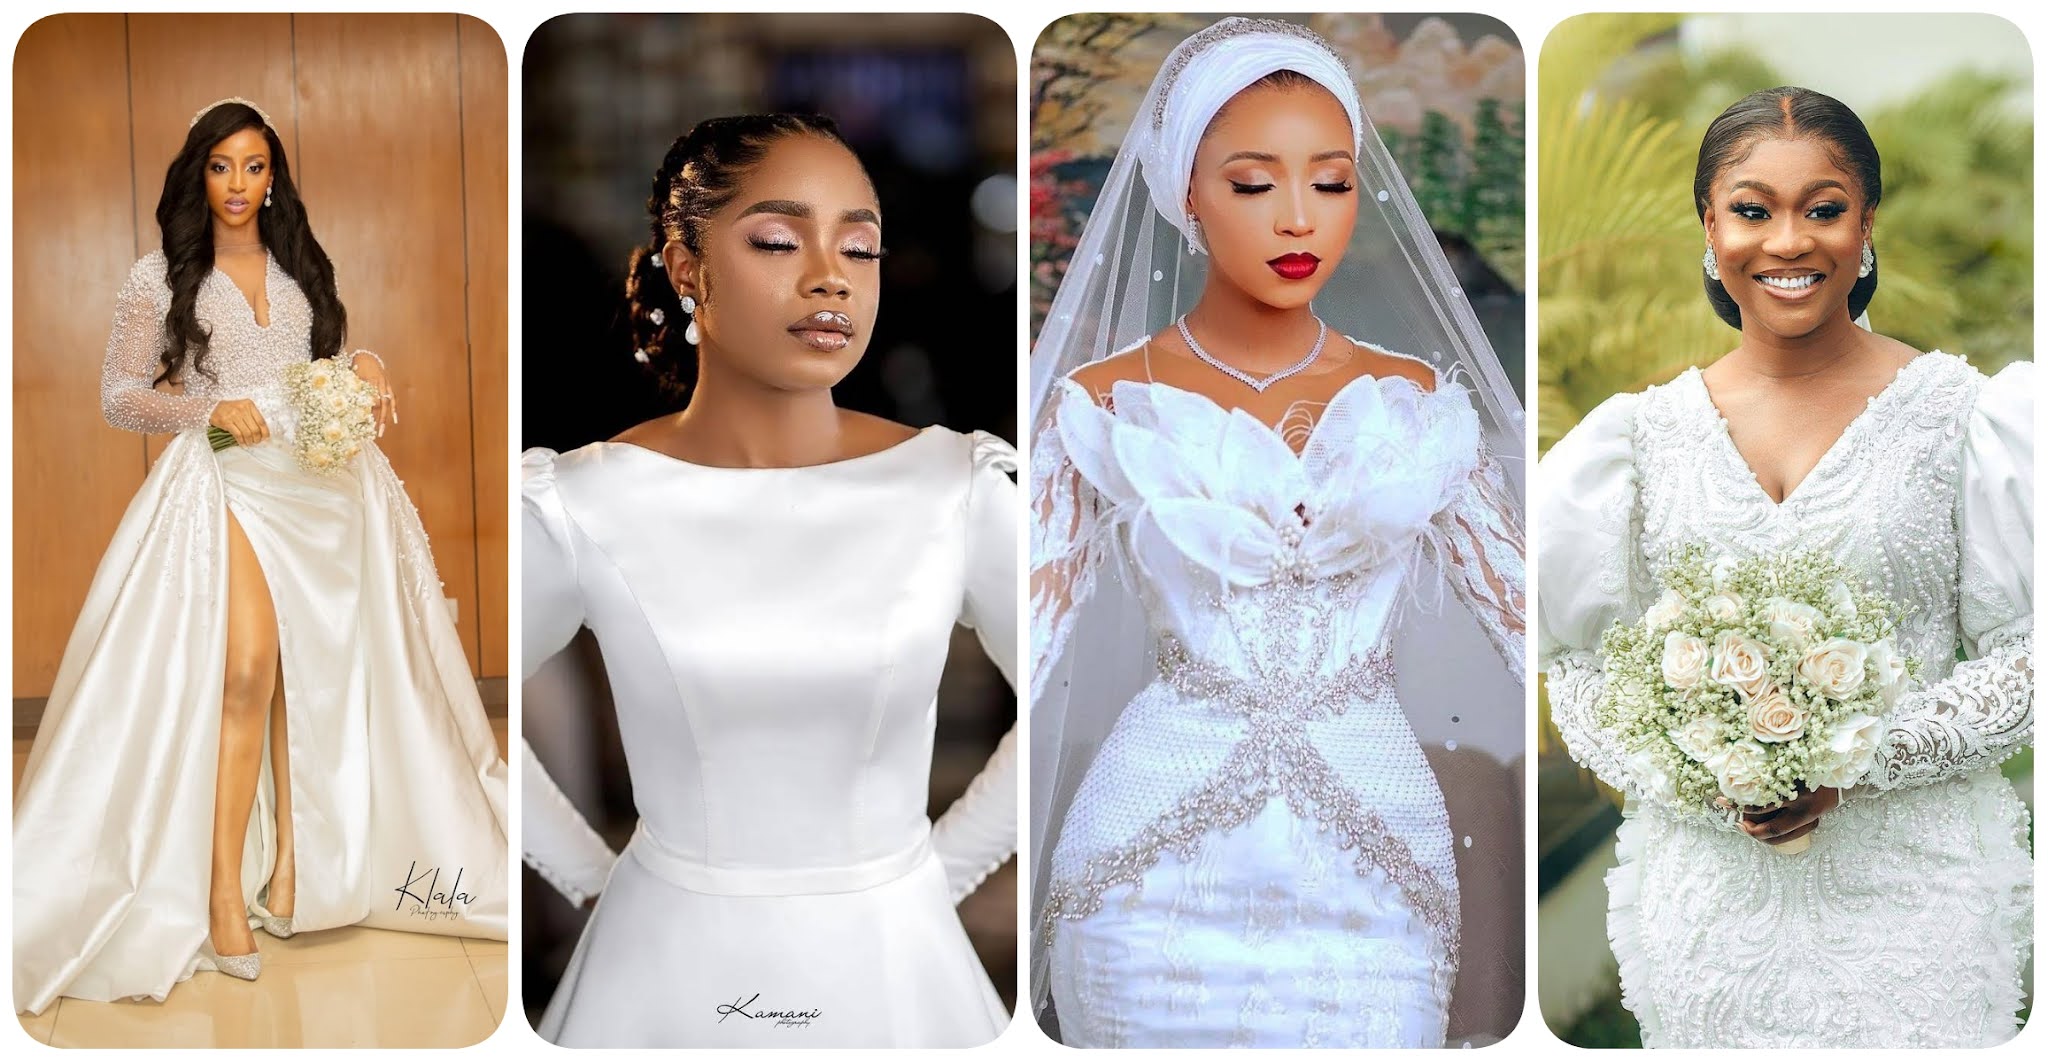 Exquisite Wedding Dress Trends in 2022 ...